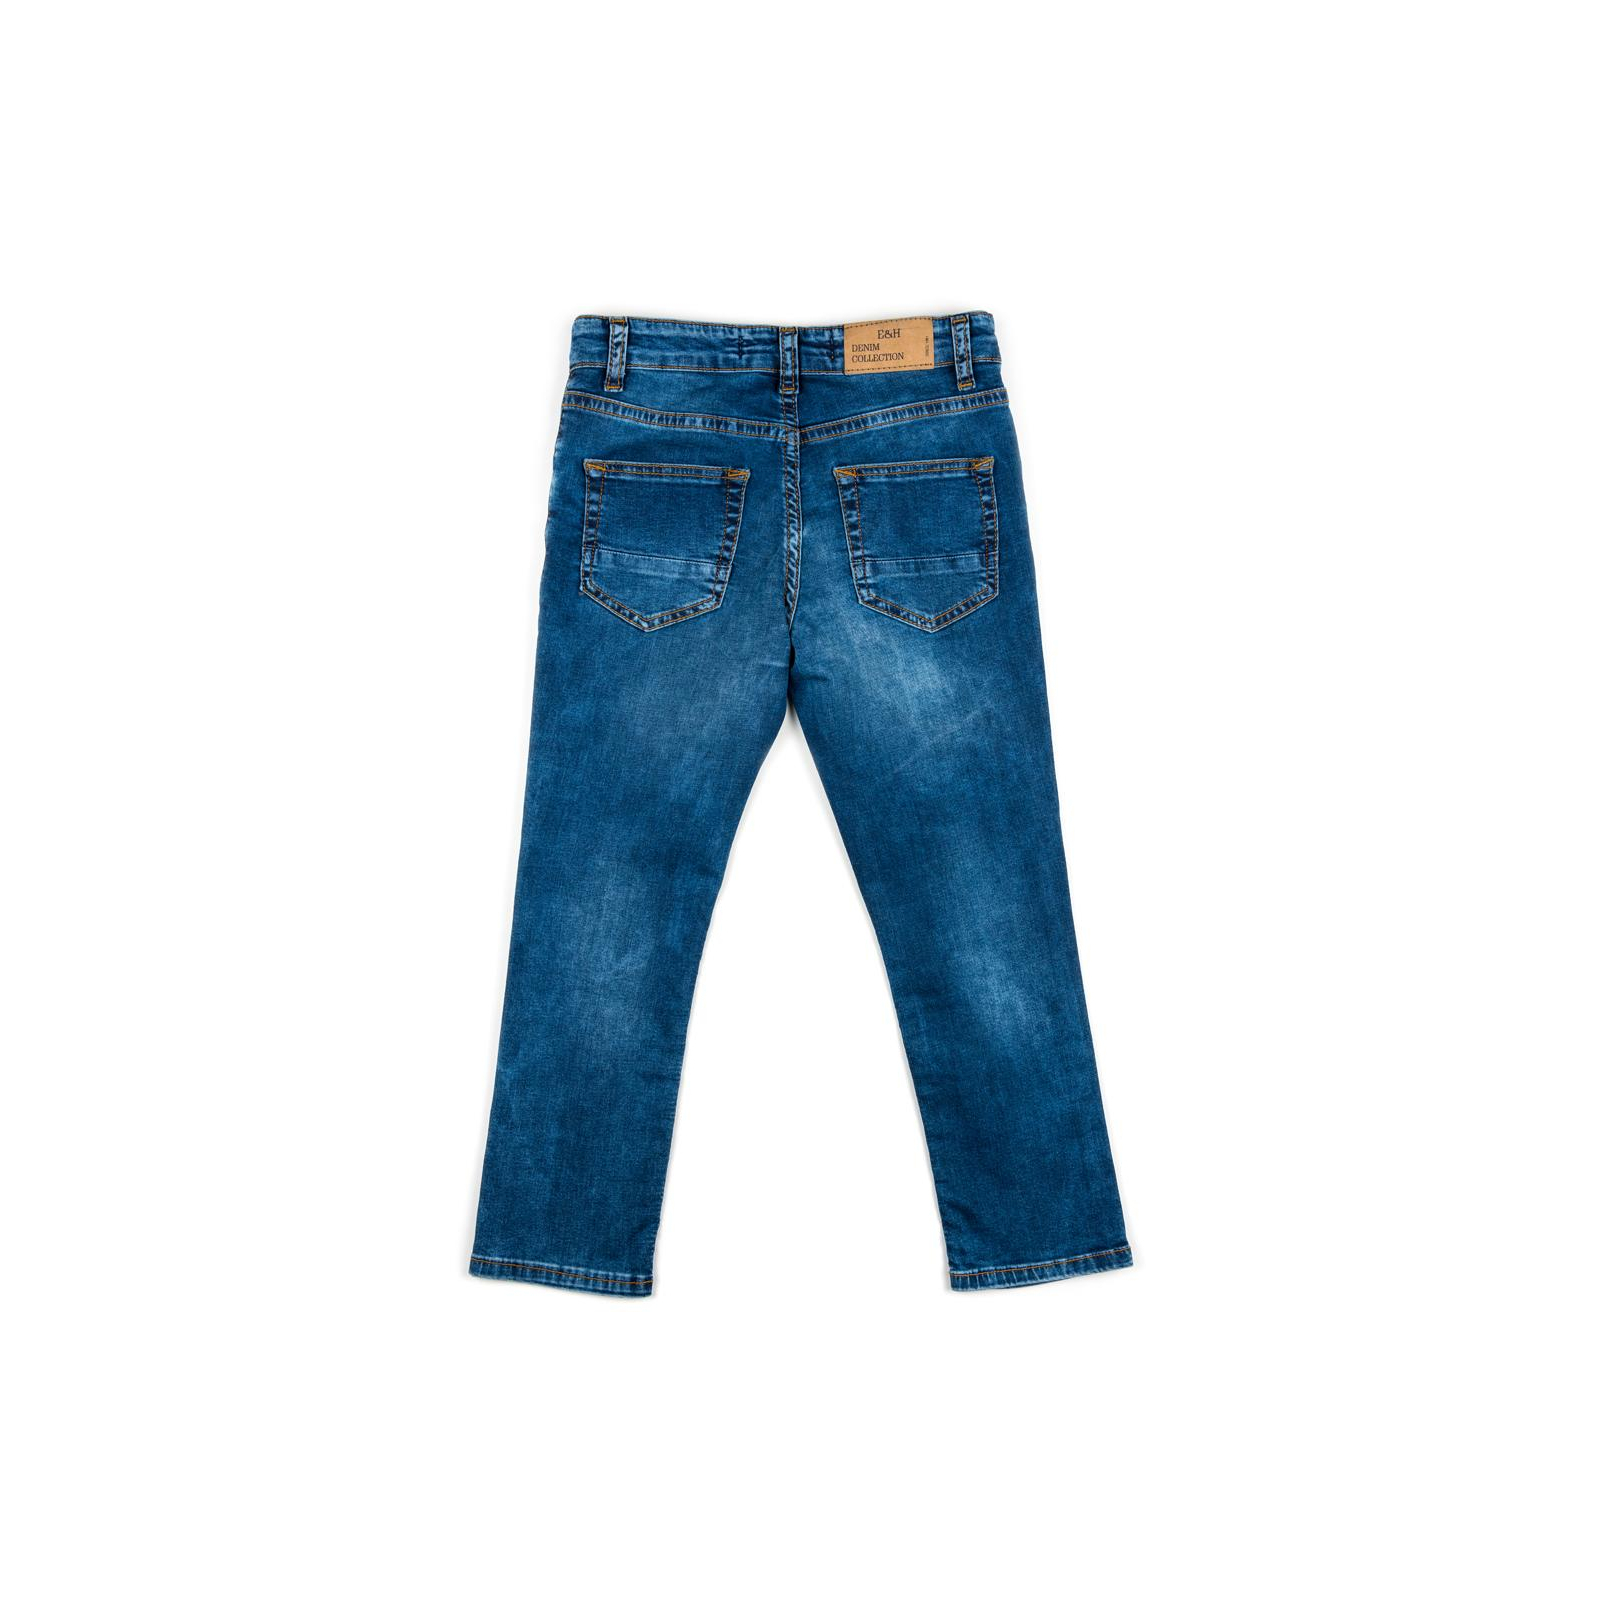 Штаны детские Breeze джинсовые (OZ-18611-134B-blue) изображение 2